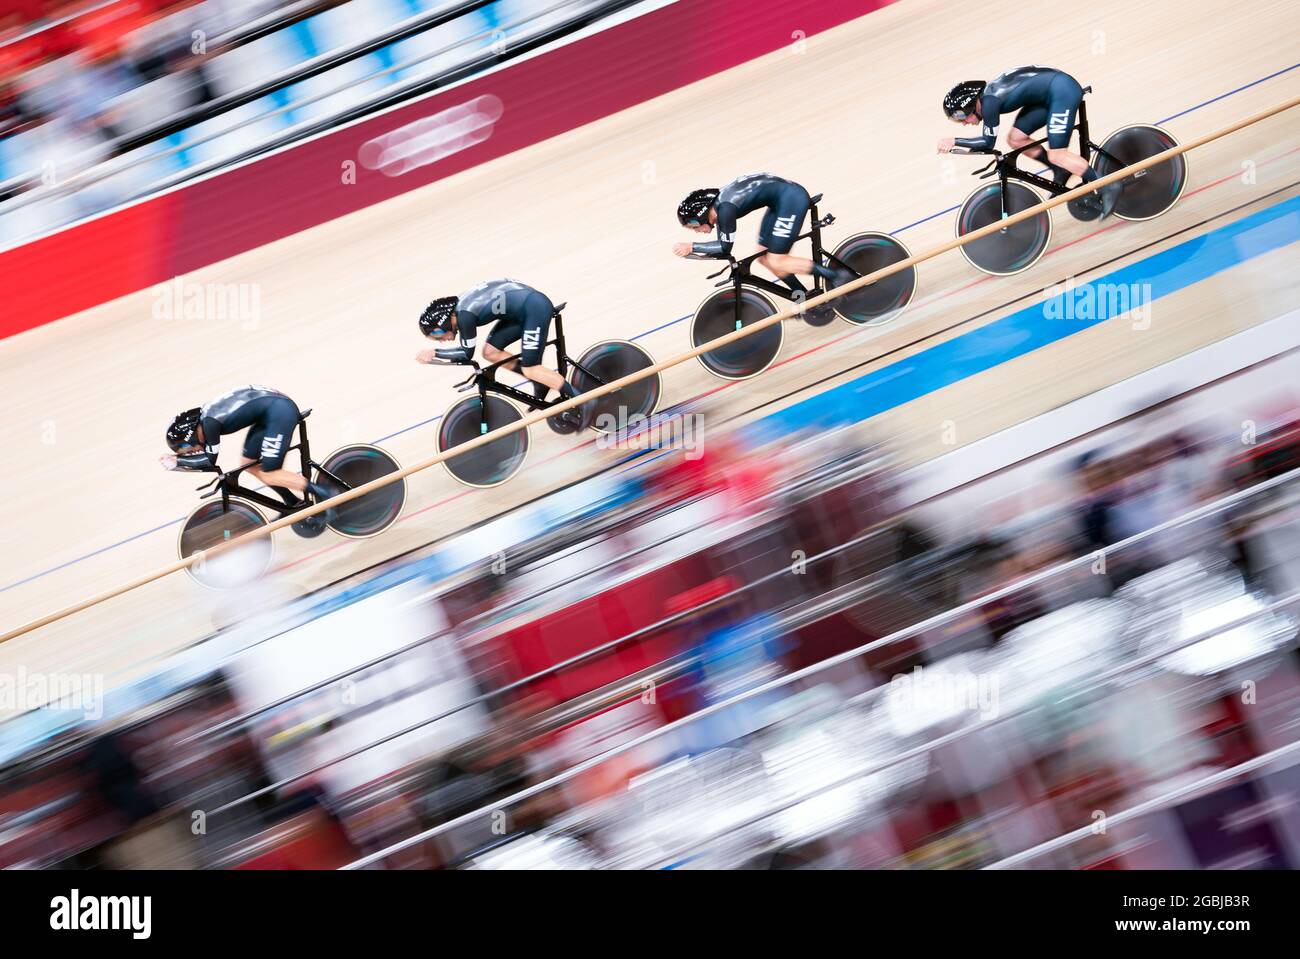 La Nouvelle-Zélande dans les finales de l'équipe masculine de poursuite pendant le vélo d'athlétisme à l'Izu Velodrome le douzième jour des Jeux Olympiques de Tokyo 2020 au Japon. Date de la photo: Mercredi 4 août 2021. Banque D'Images